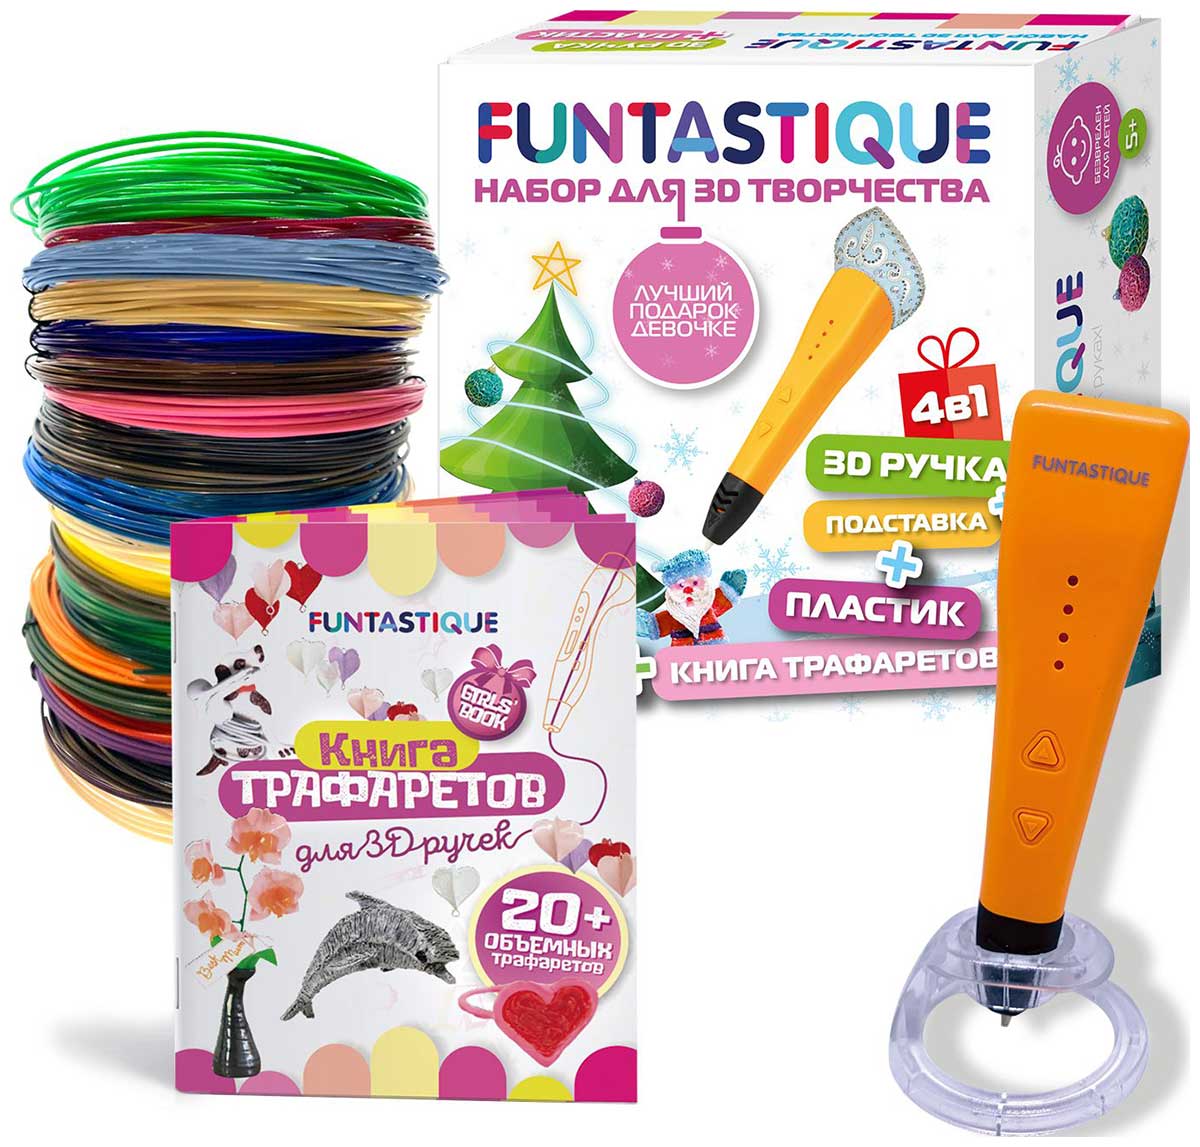 Набор для 3Д творчества Funtastique 4в1 ''Для девочек'' новогодний набор для 3д творчества funtastique 4в1 для девочек новогодний